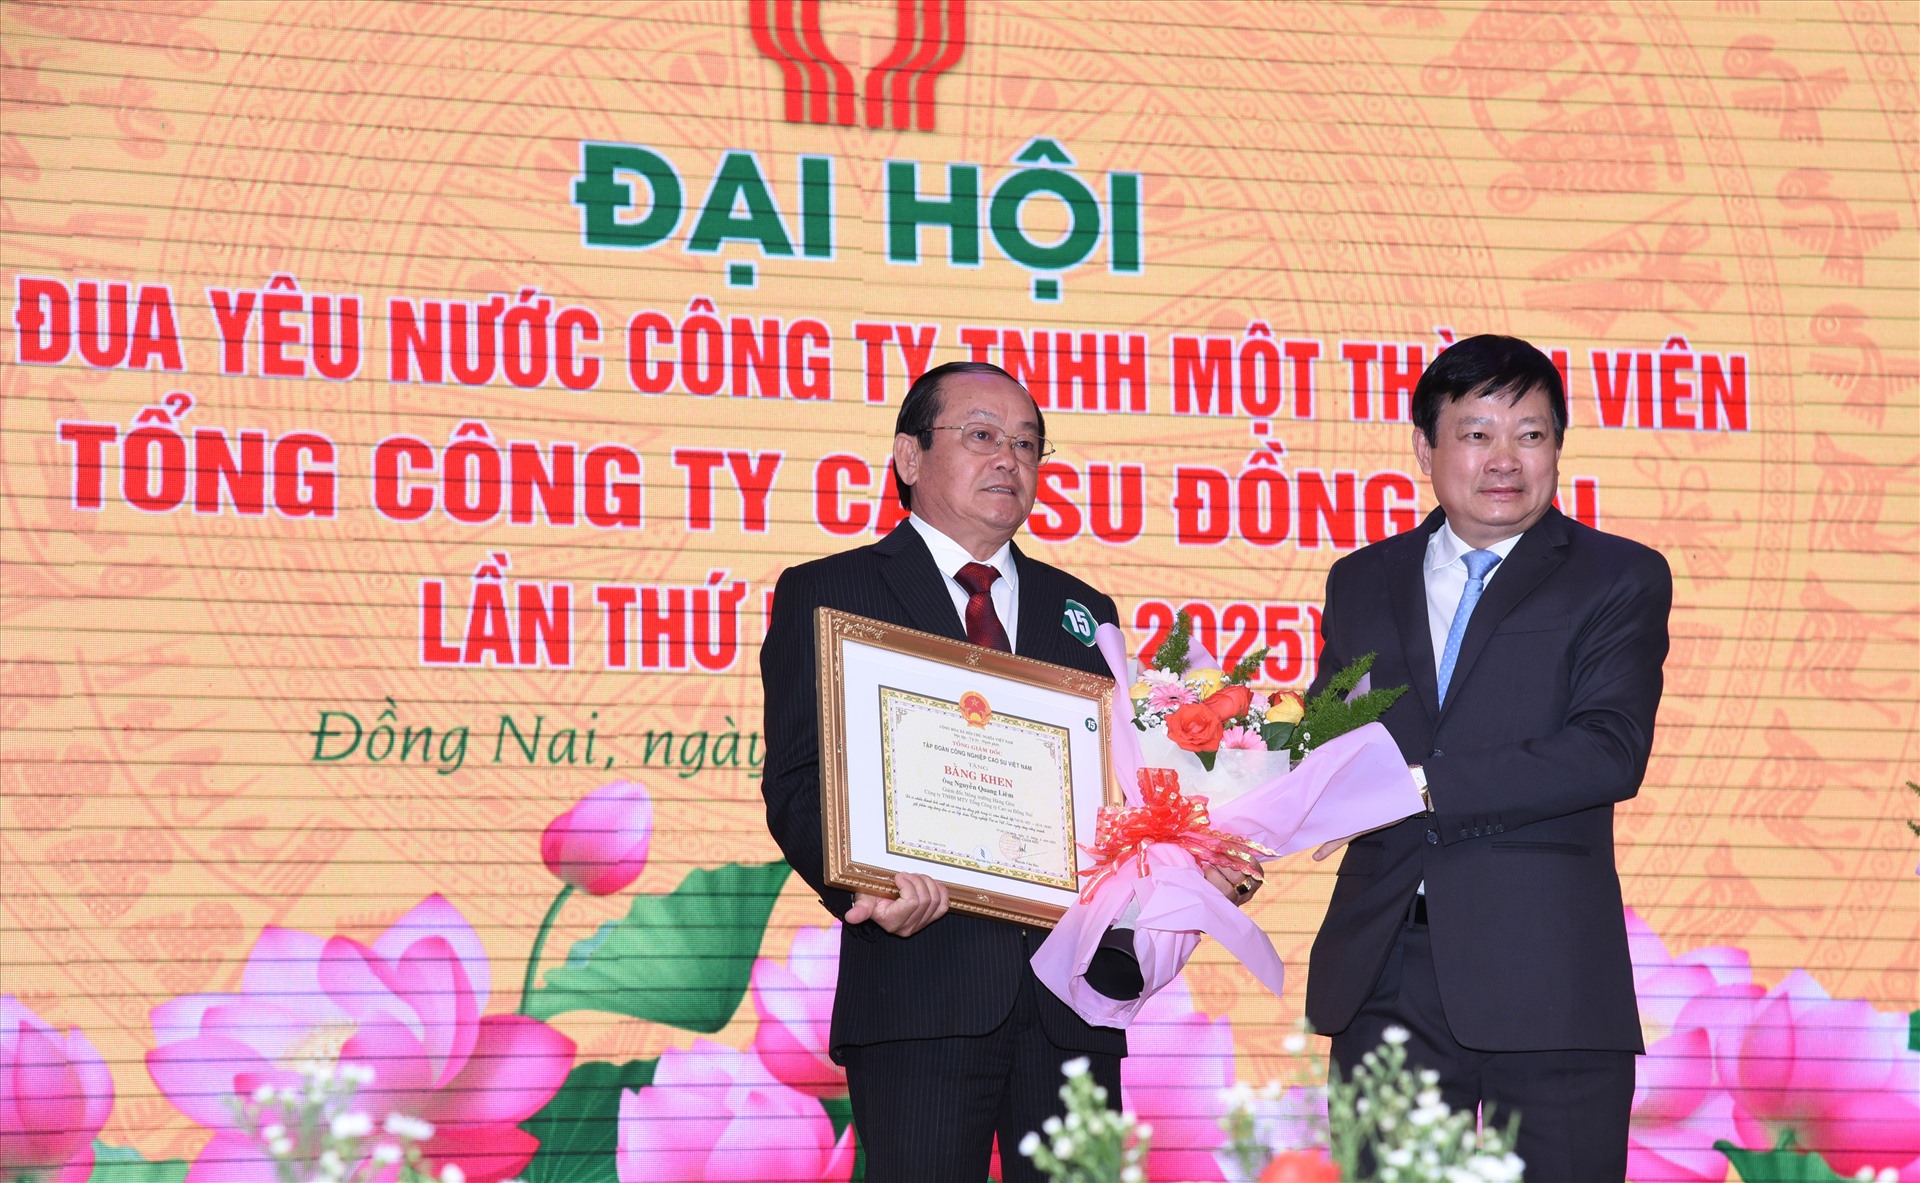 Ông Huỳnh Văn Bảo, Tổng Giám đốc Tập đoàn Công nghiệp Caosu Việt Nam (bên phải) tặng Bằng khen của Tập đoàn cho các cá nhân có thành tích thi đua trong giai đoạn 2015 -2019. Ảnh Nam Dương